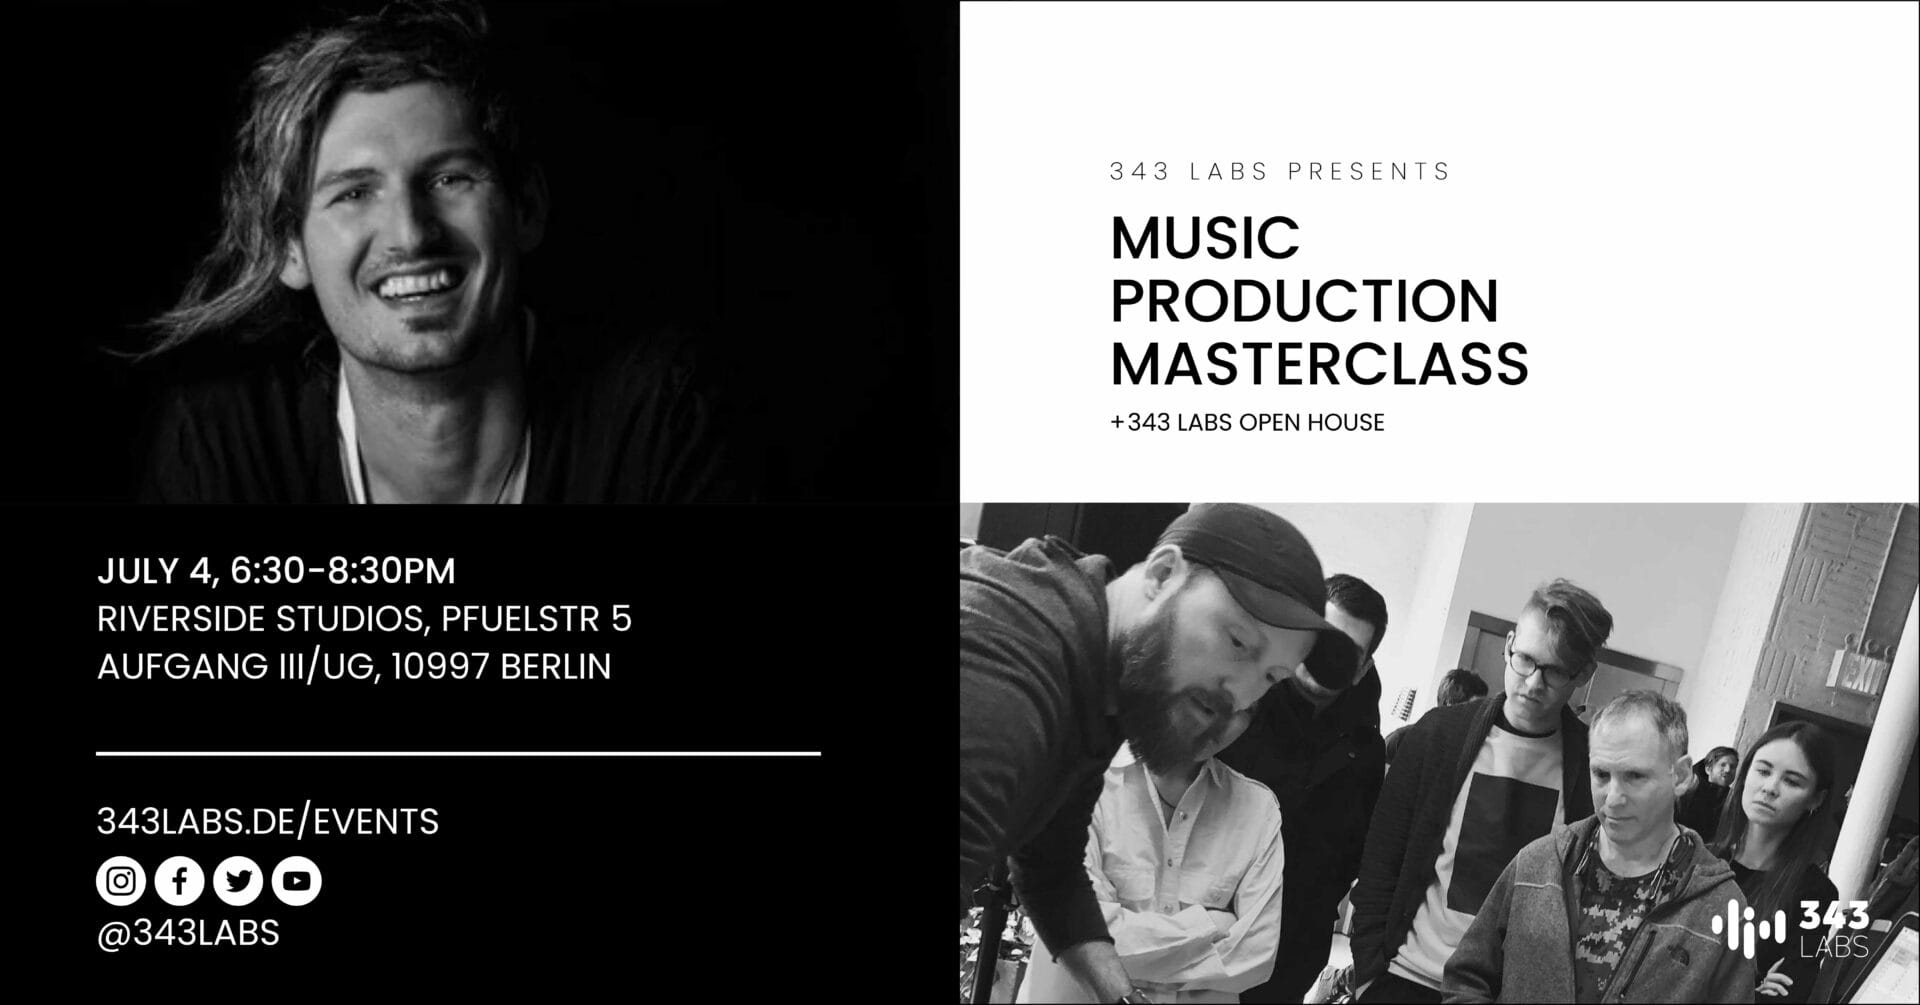 Berlin music production masterclass july 4